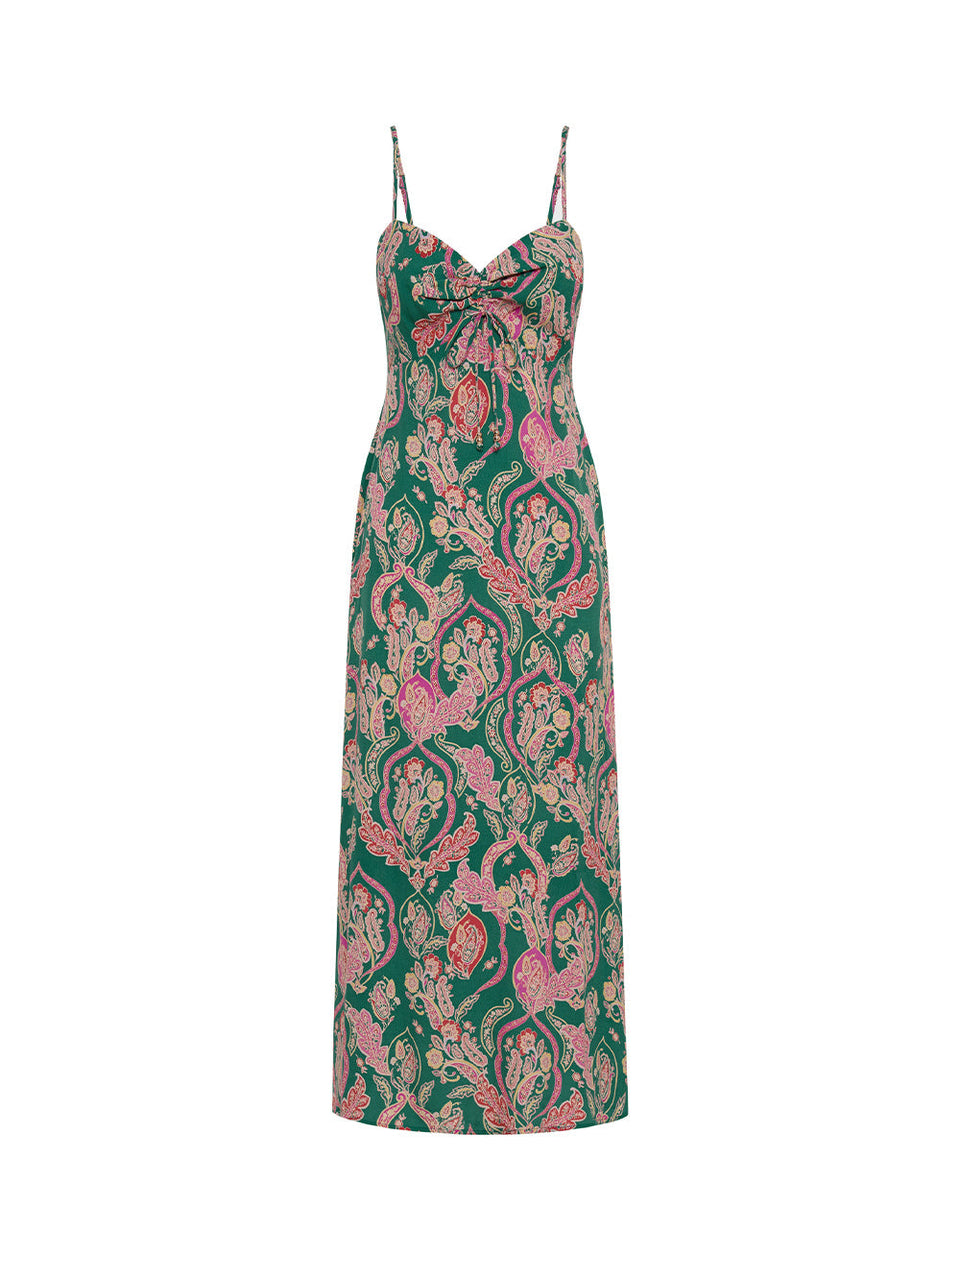 KIVARI Talitha Midi Dress | Green and Pink Midi Dress